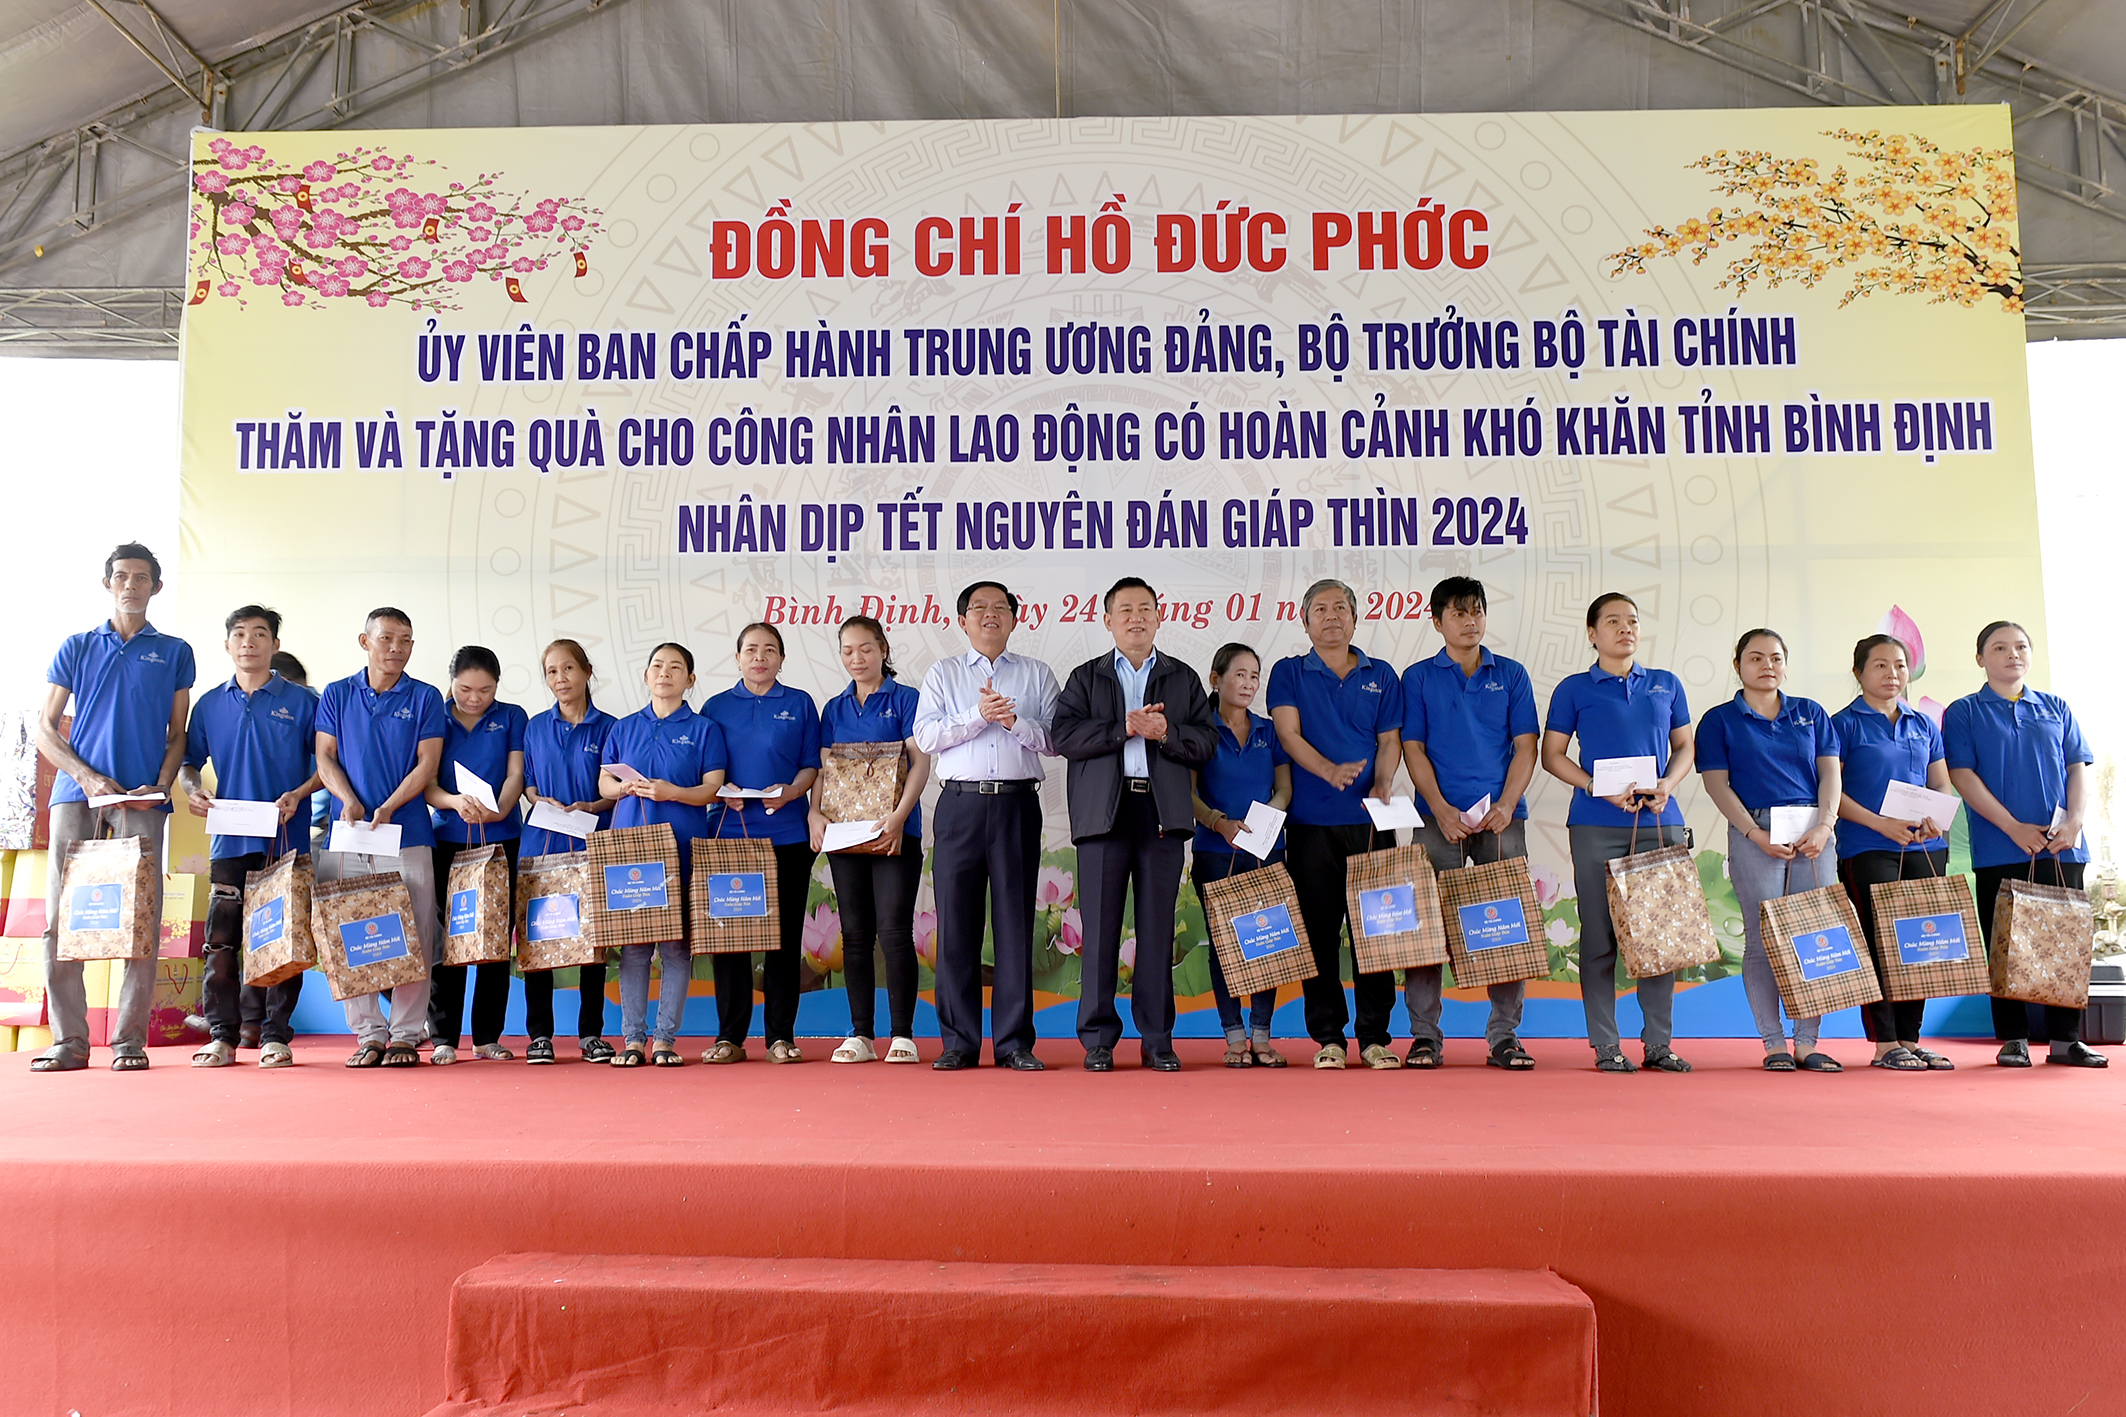 Bộ trưởng Hồ Đức Phớc thăm và chúc tết công nhân, người lao động nghèo tại Bình Định